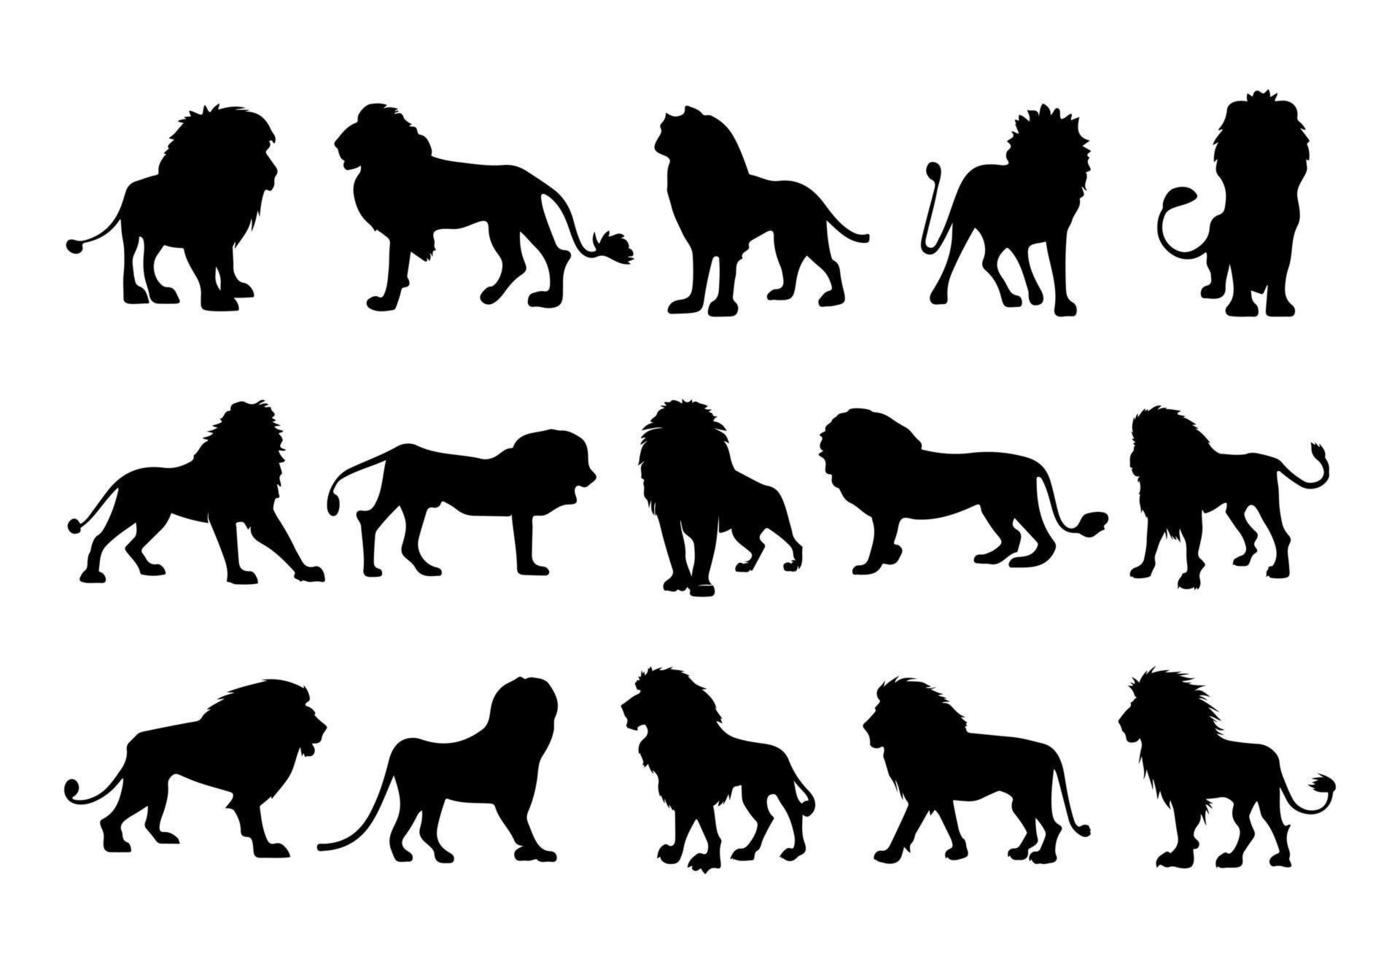 león Rey silueta negro logo animales siluetas íconos conjunto mano dibujado león cabeza cara silueta vector ilustración